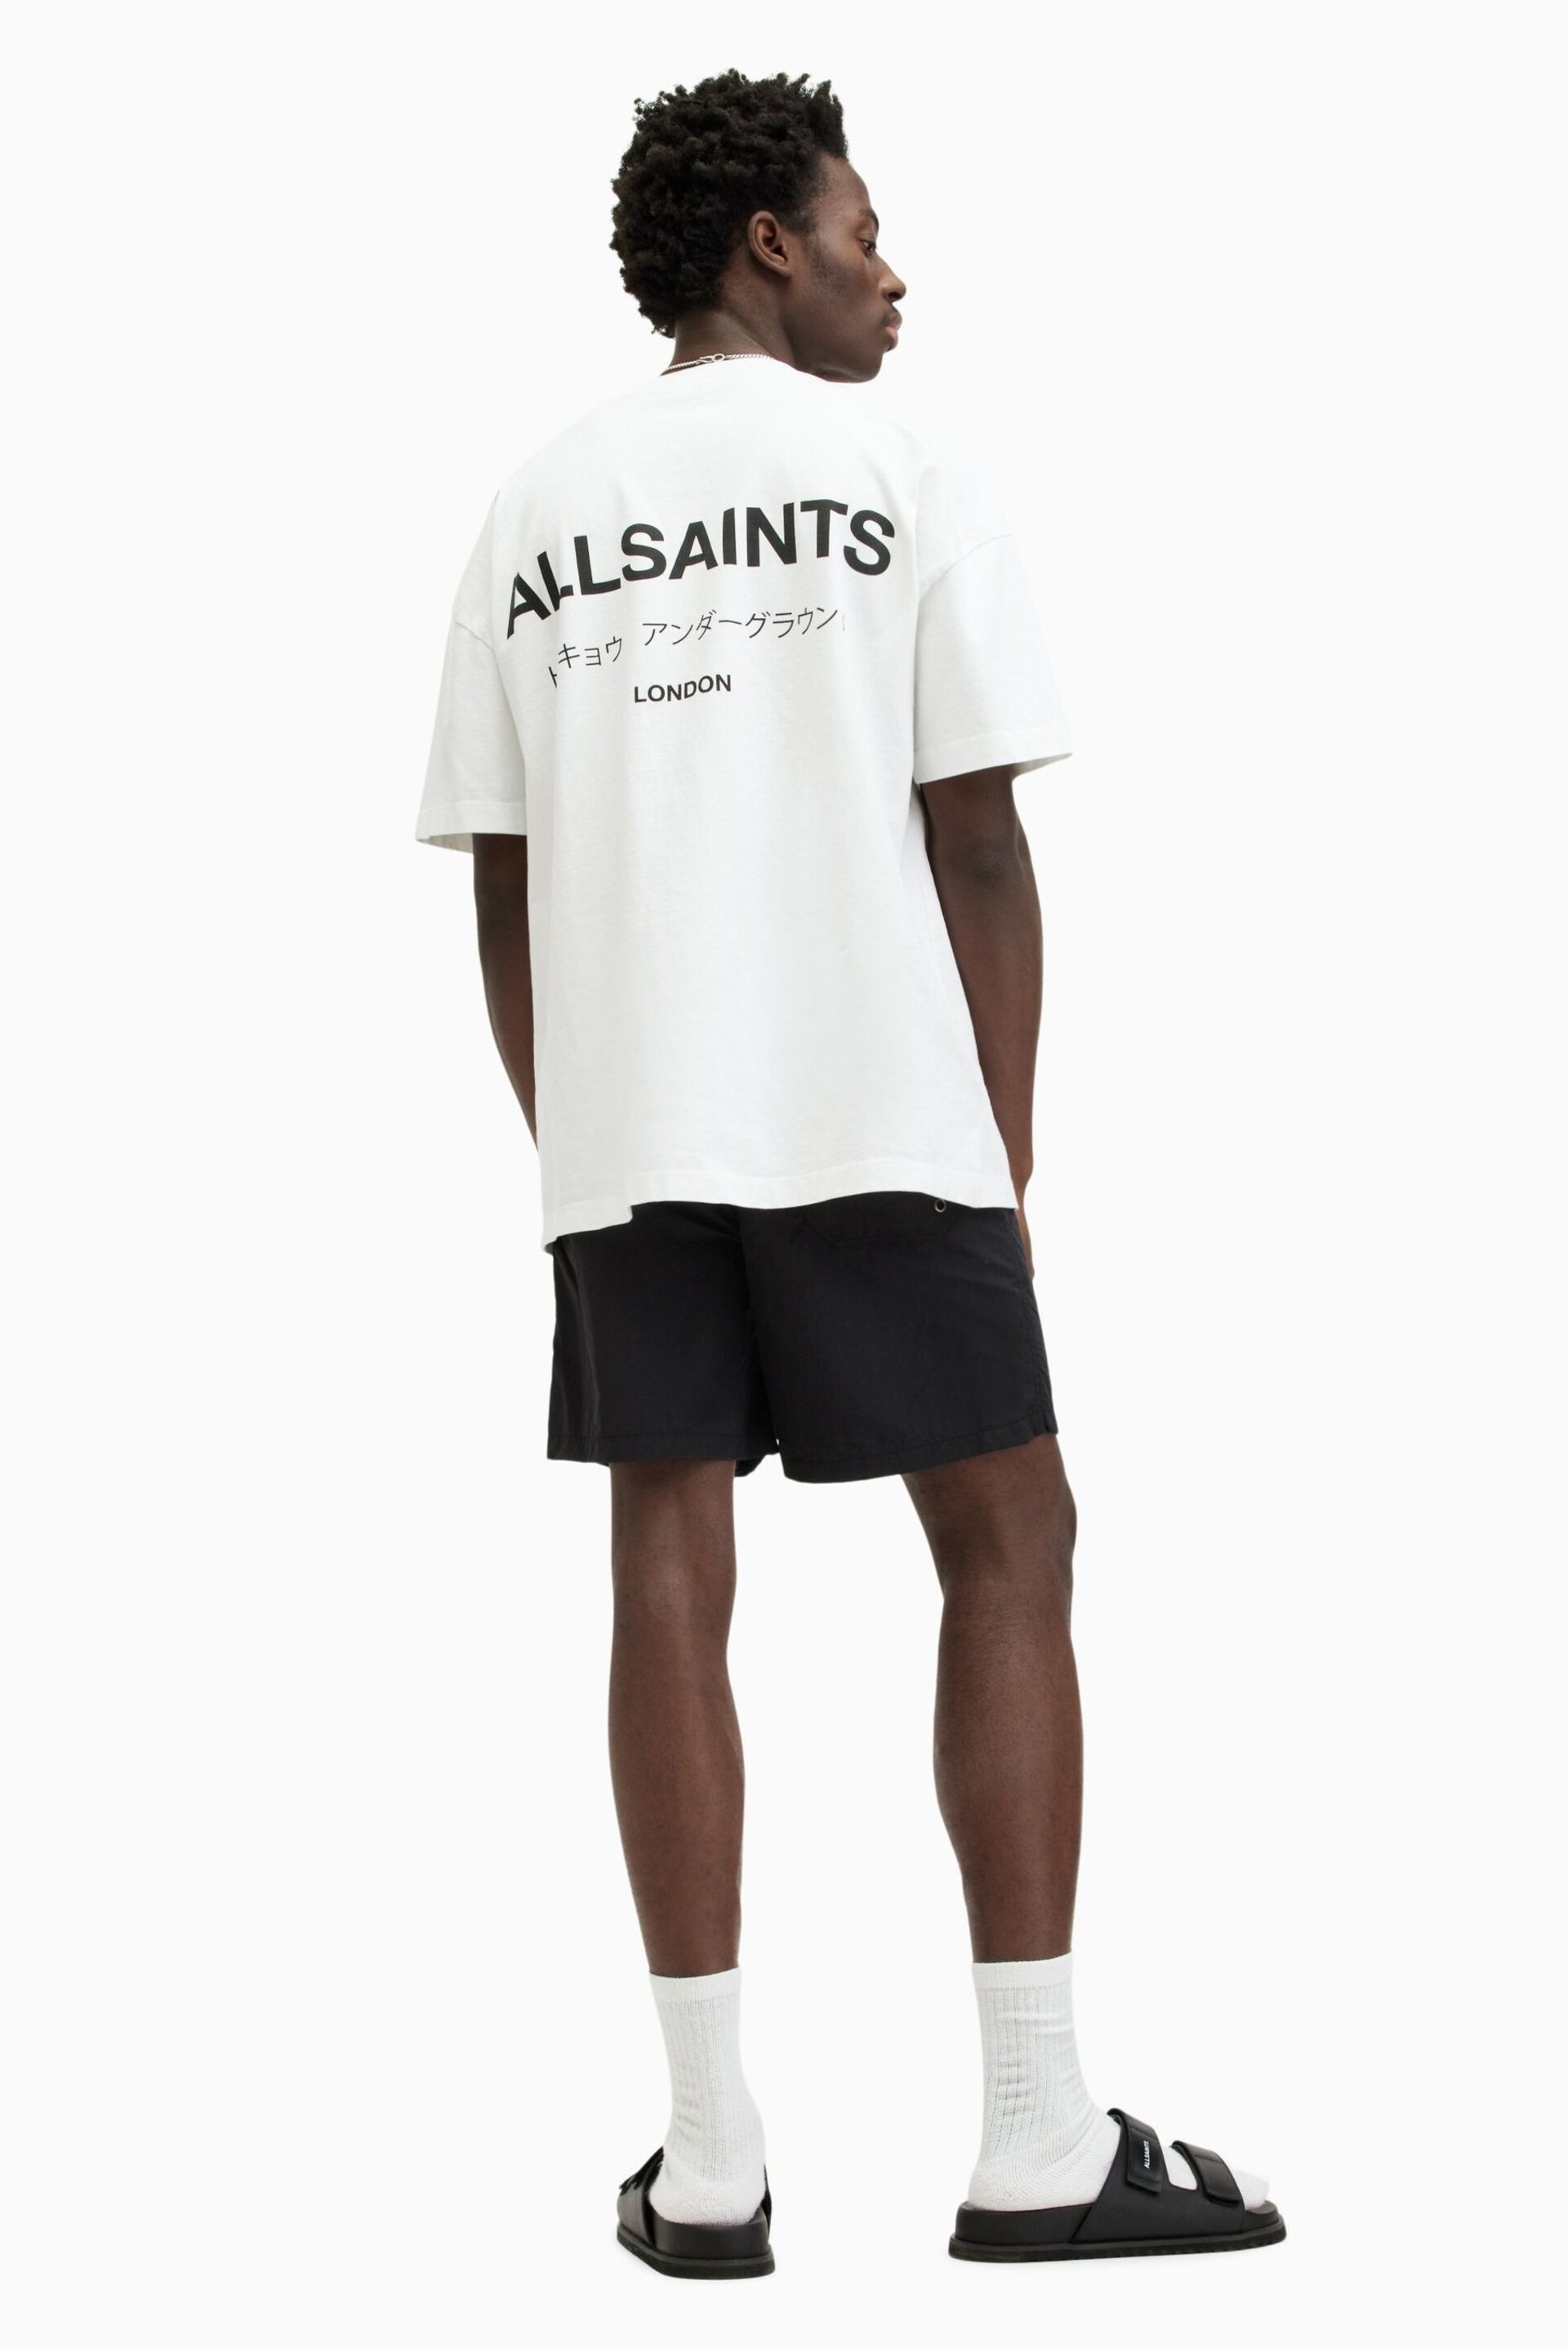 AllSaints Underground Black Swim Shorts - Image 3 of 10